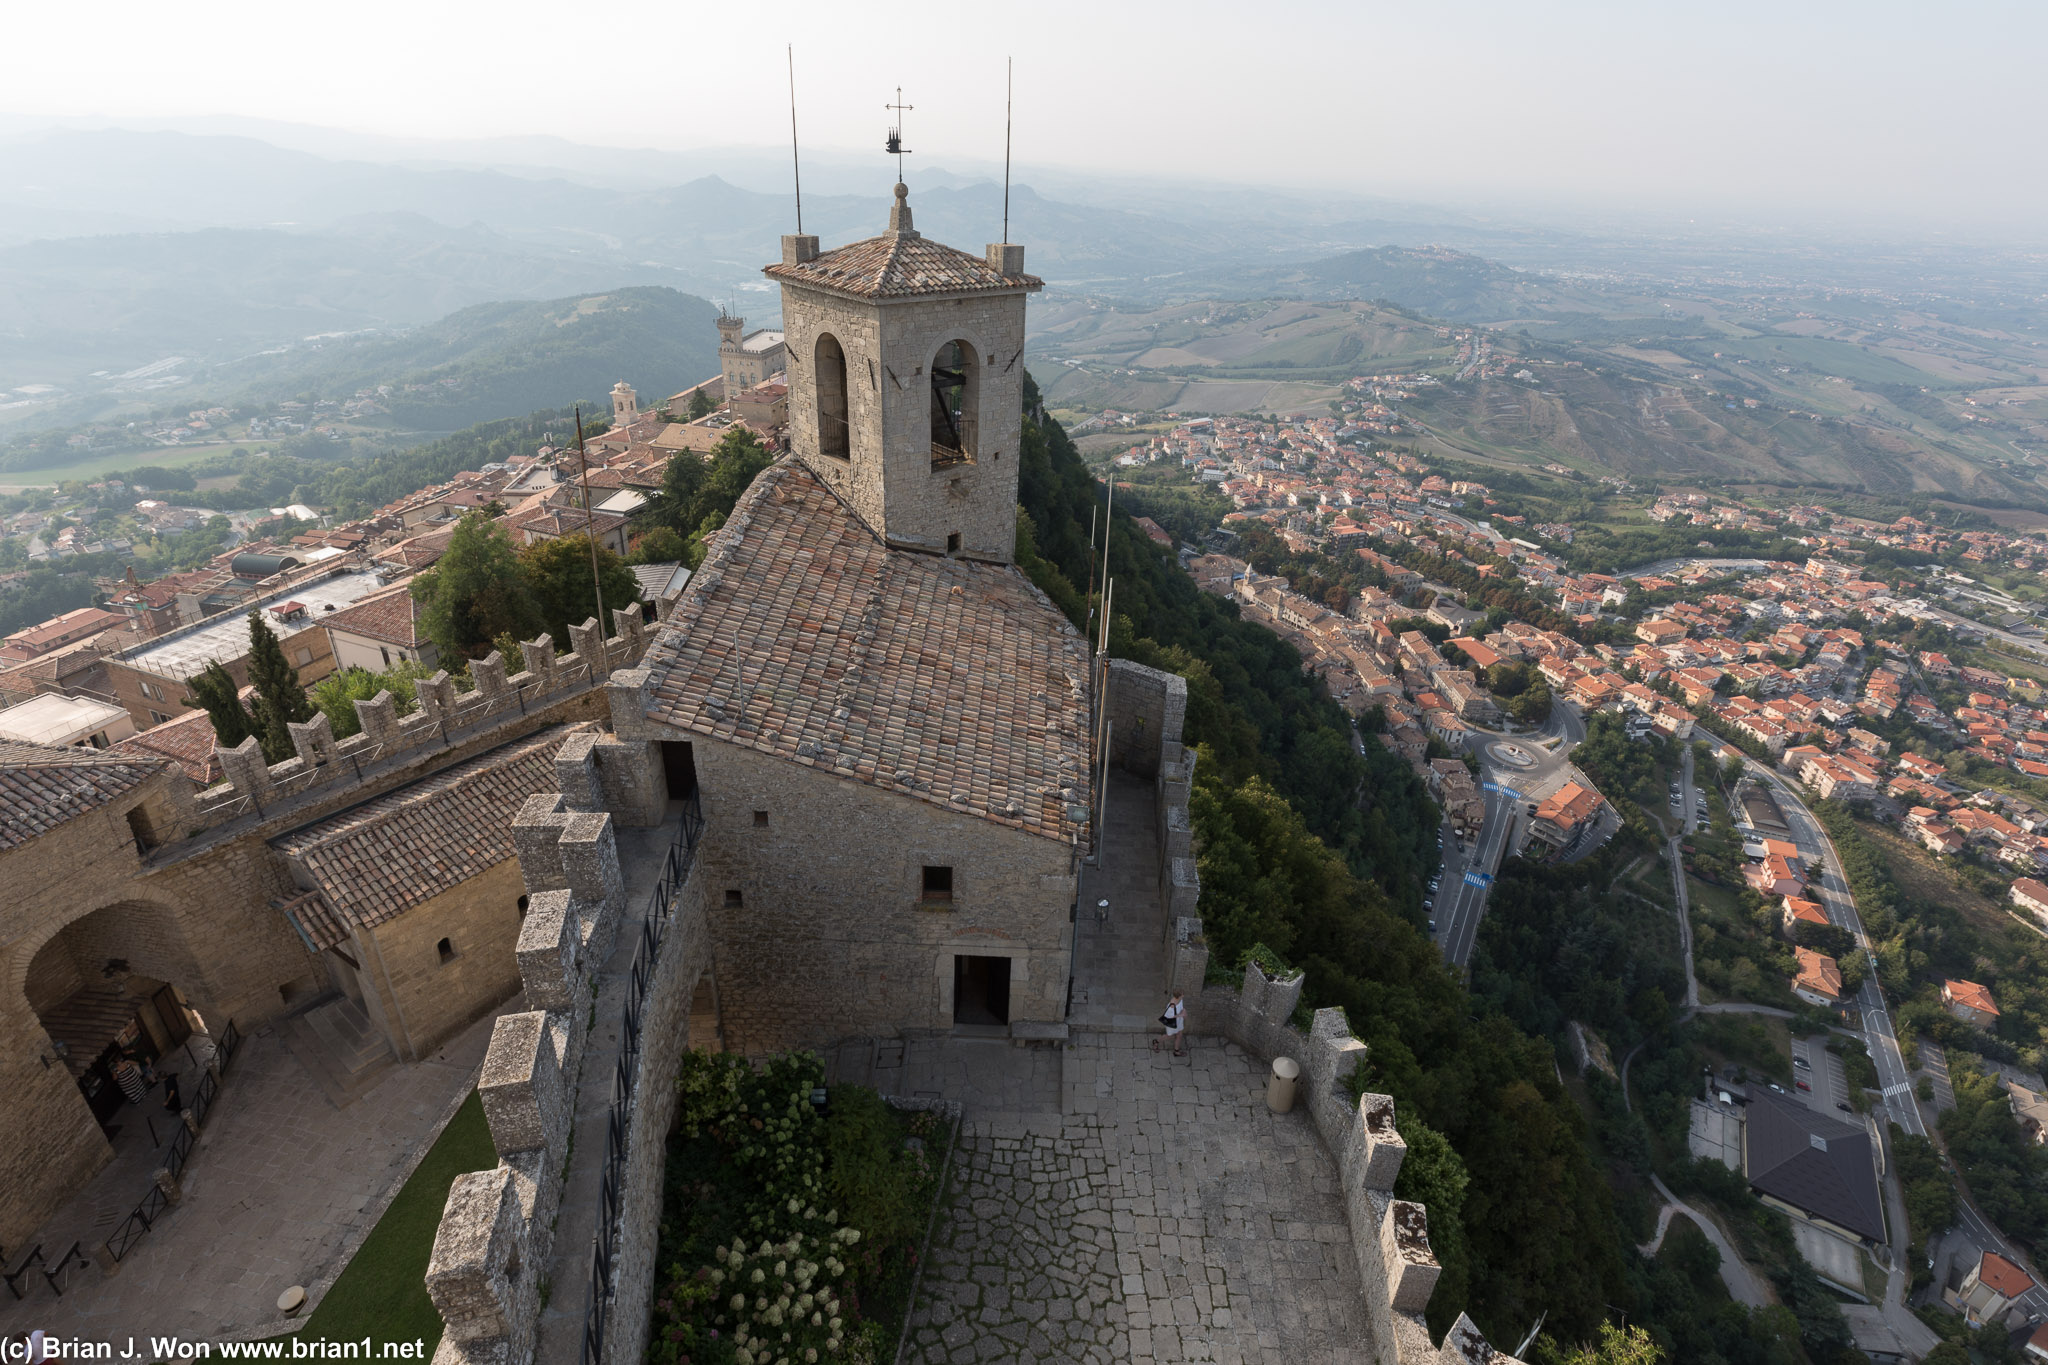 Looking down from Guaita towards towns that make up San Marino.